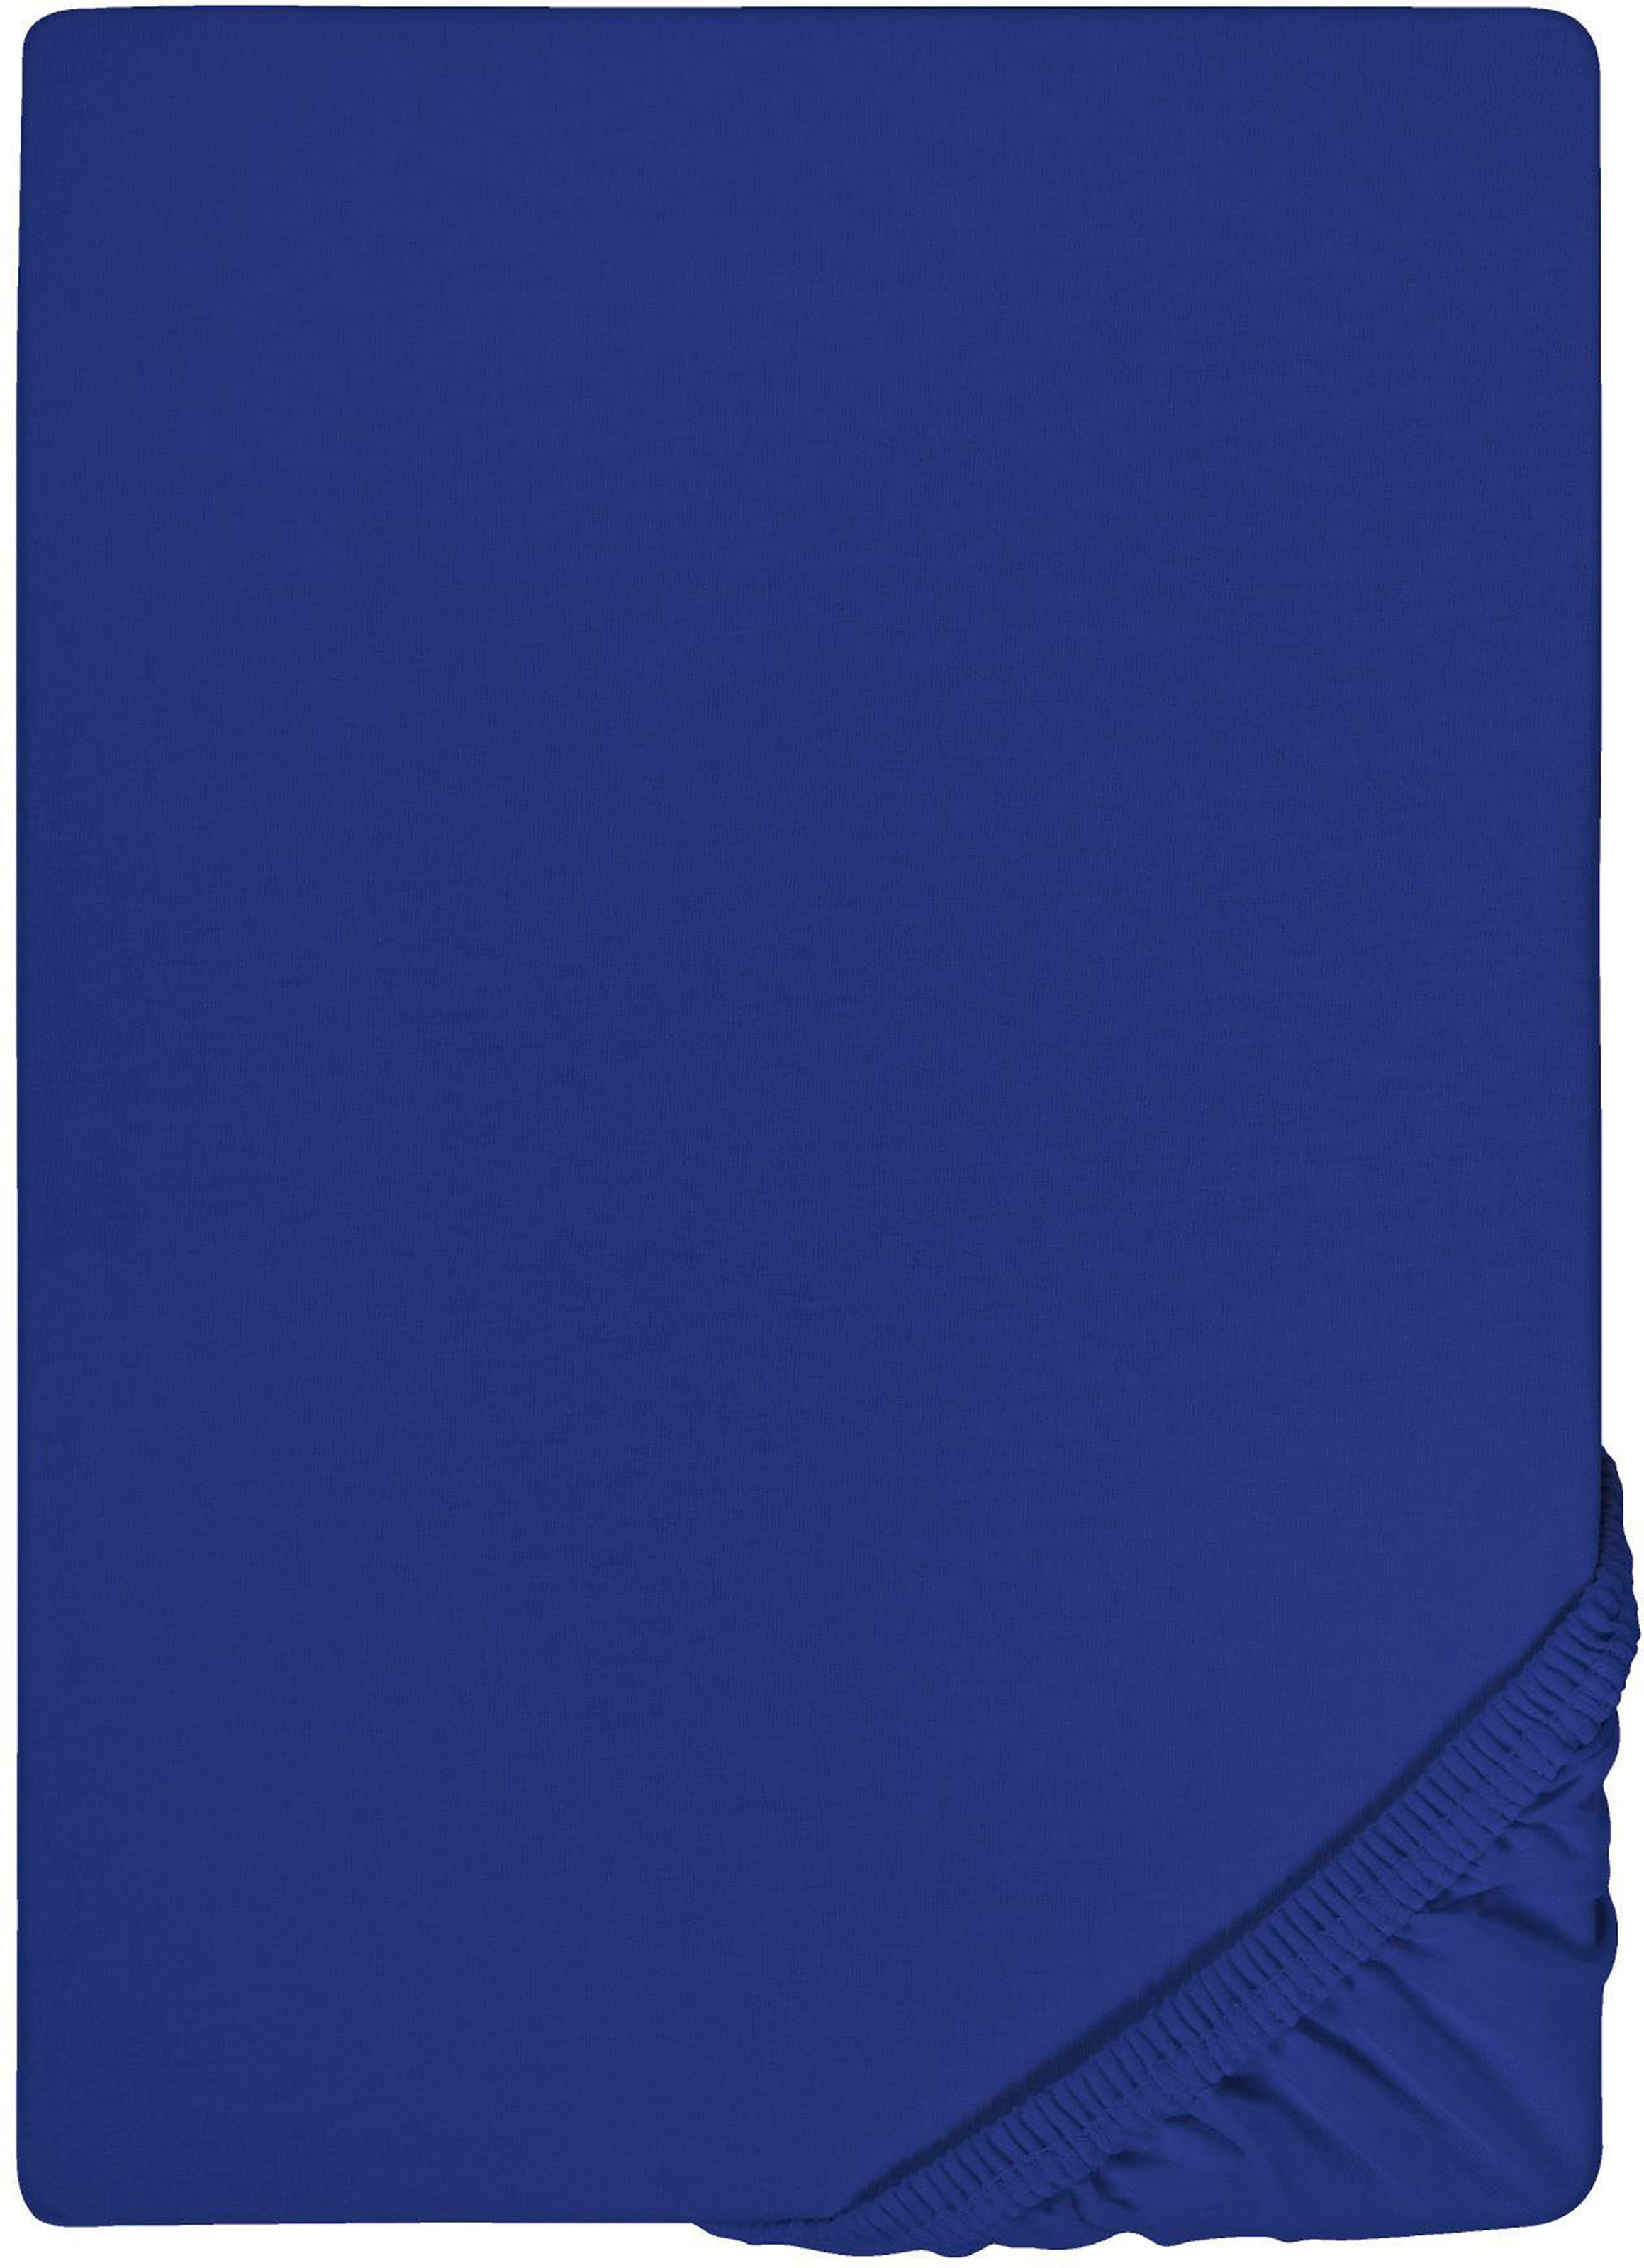 Biberna Spannbettlaken »Marc in Gr. 90x200, 140x200 oder 180x200 cm«, aus Baumwolle, für Matratzen bis 22 cm Höhe, Bettlaken, Spannbetttuch